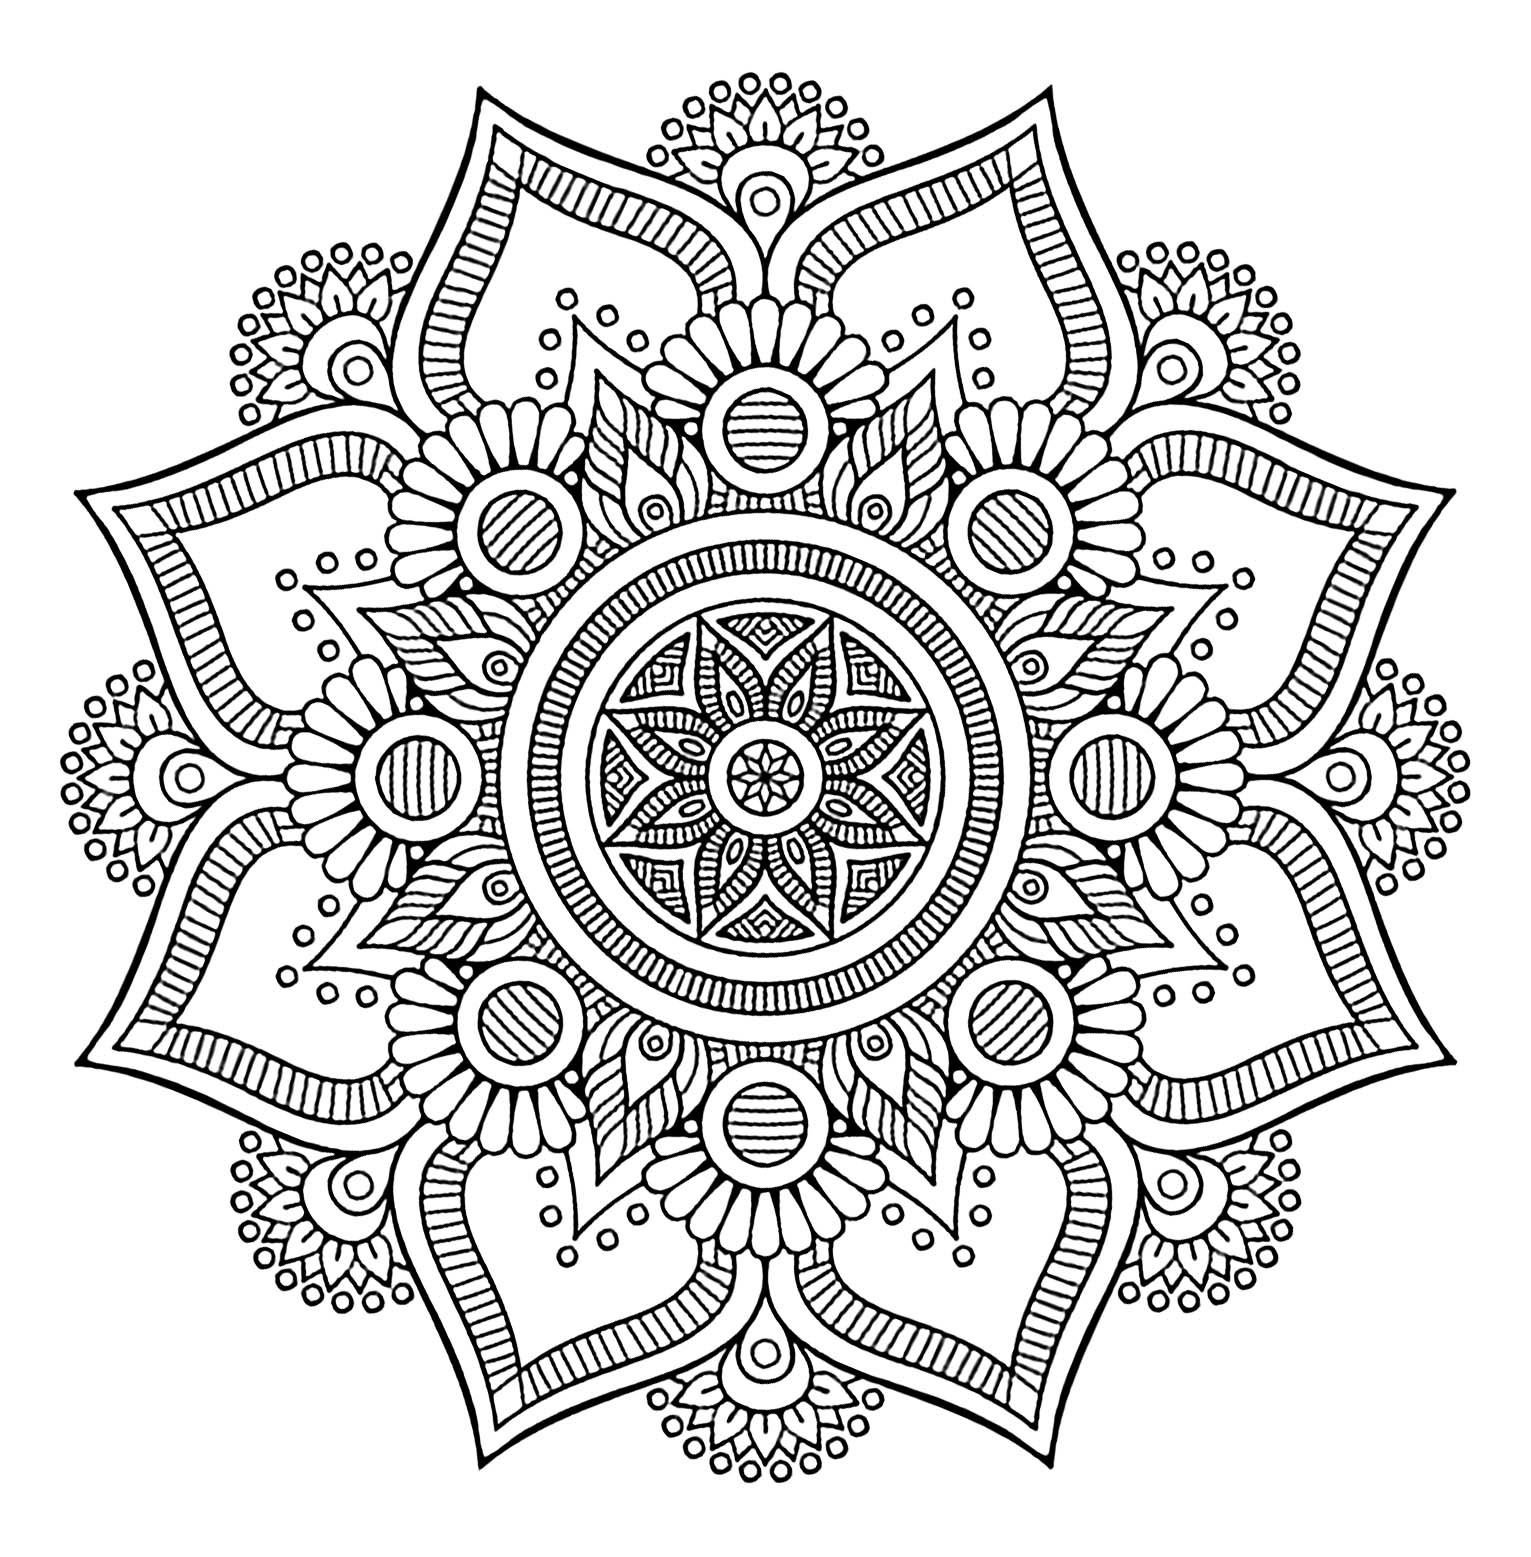 Cooles Mandala mit 8 großen Blütenblättern und pflanzlichen Mustern